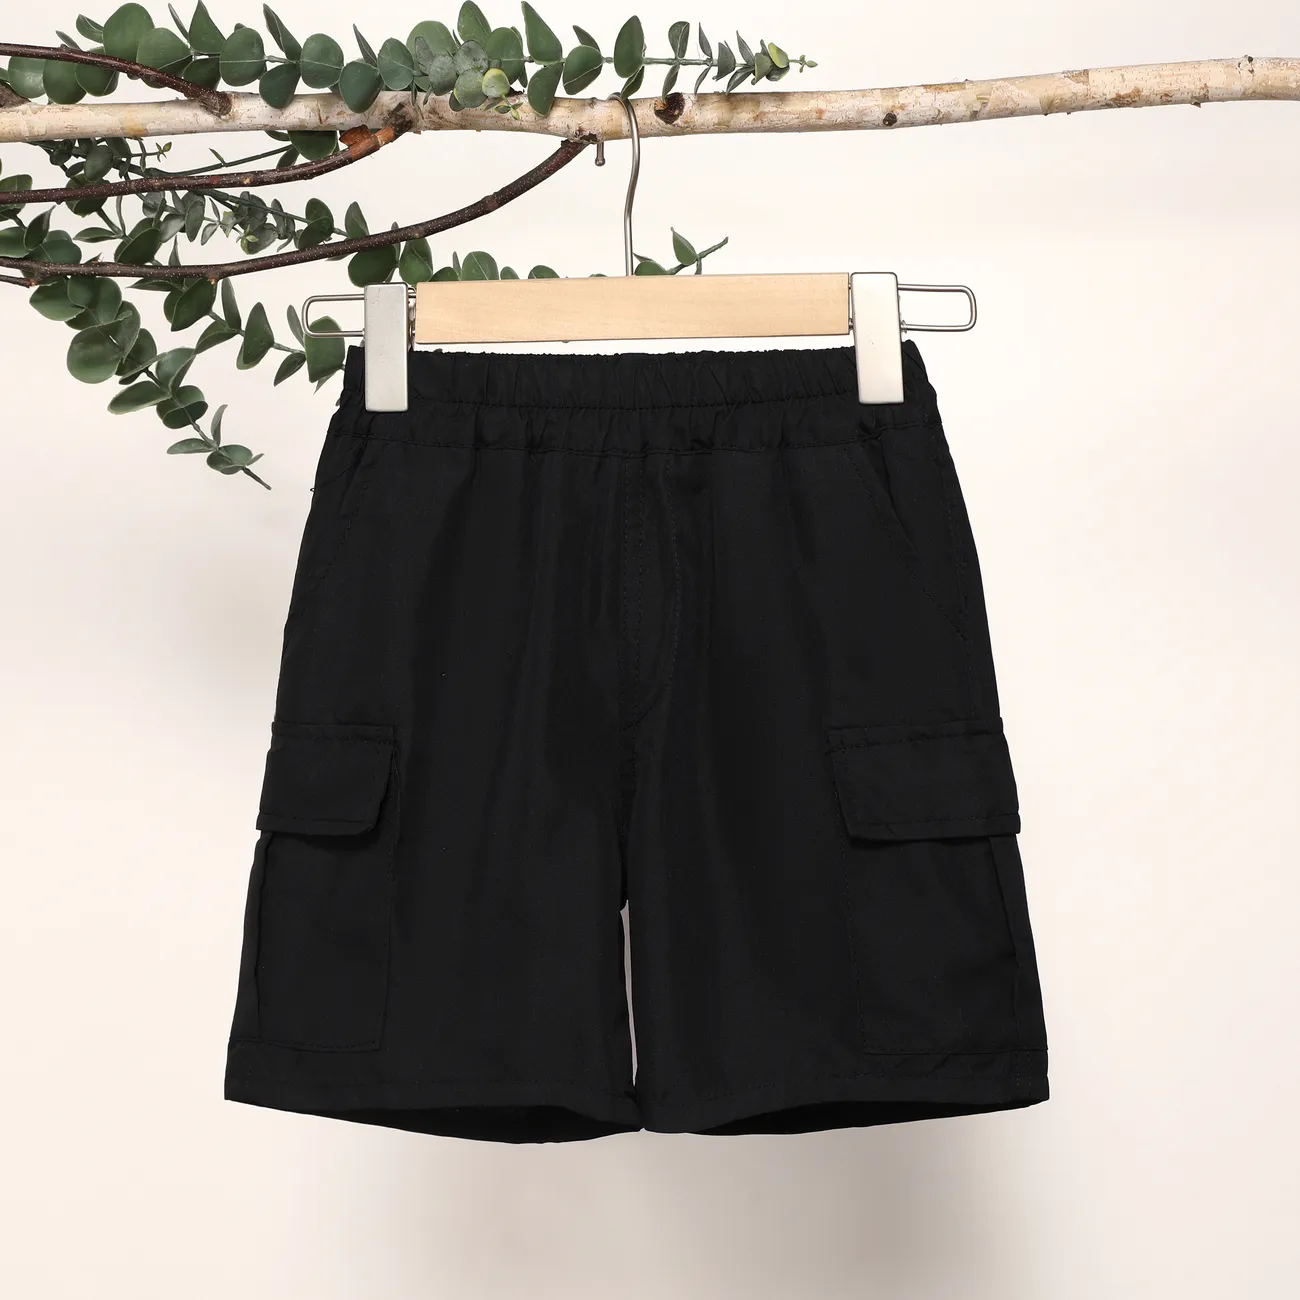 Pantalones cortos casuales para niños con bolsillo de parche, juego de 1 pieza, color sólido, 100% poliéster, lavable a máquina Negro big image 1